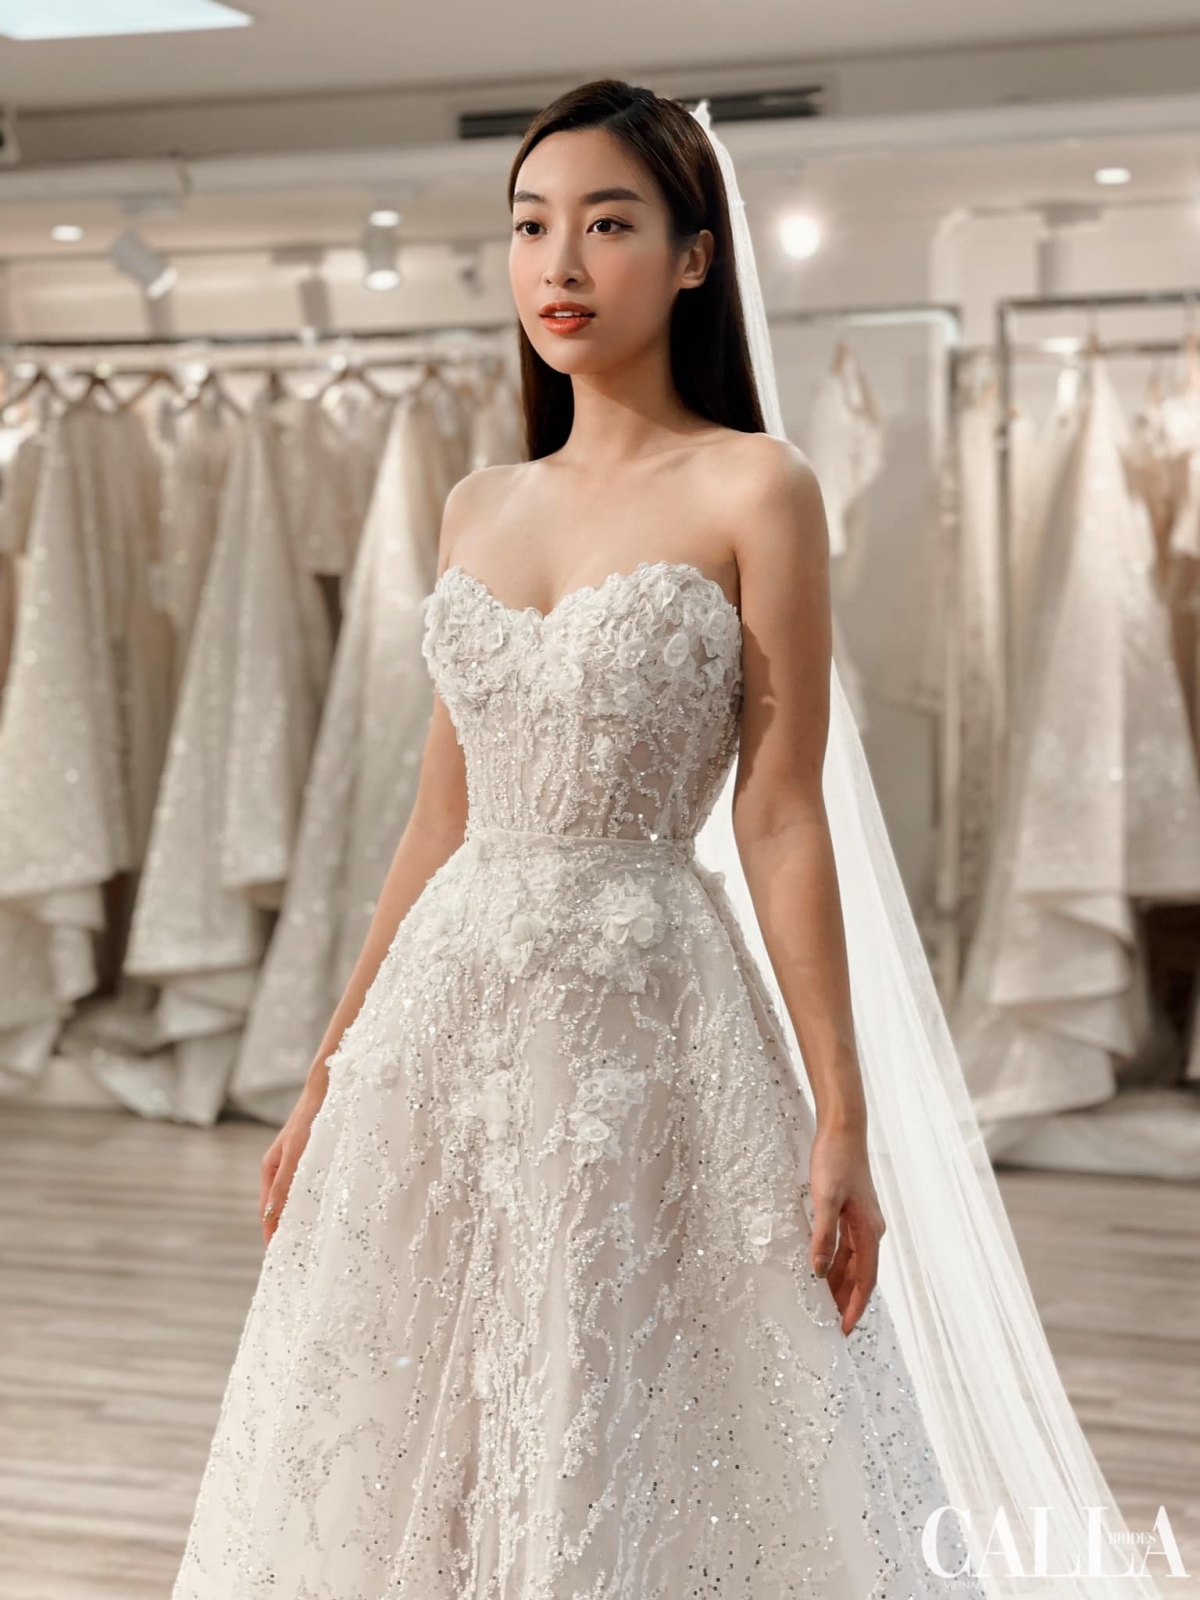 Cận cảnh bộ sưu tập váy cưới 'cô dâu tháng 10' Đỗ Mỹ Linh thử cho ngày trọng đại